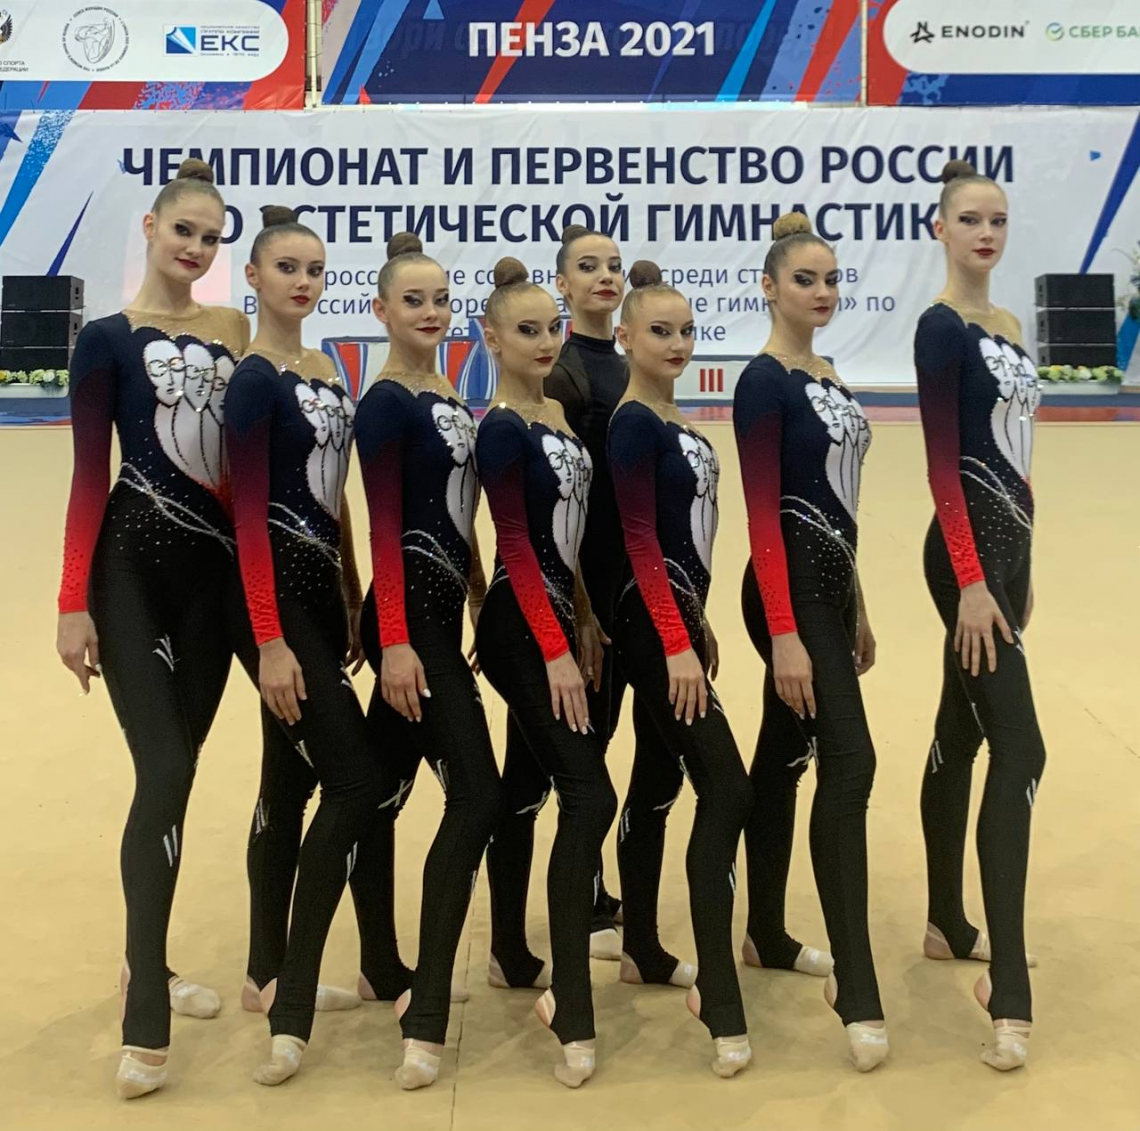 Сборная команда Нижегородской области «Вдохновение» заняла 4 место на Чемпионате России по эстетической гимнастике!